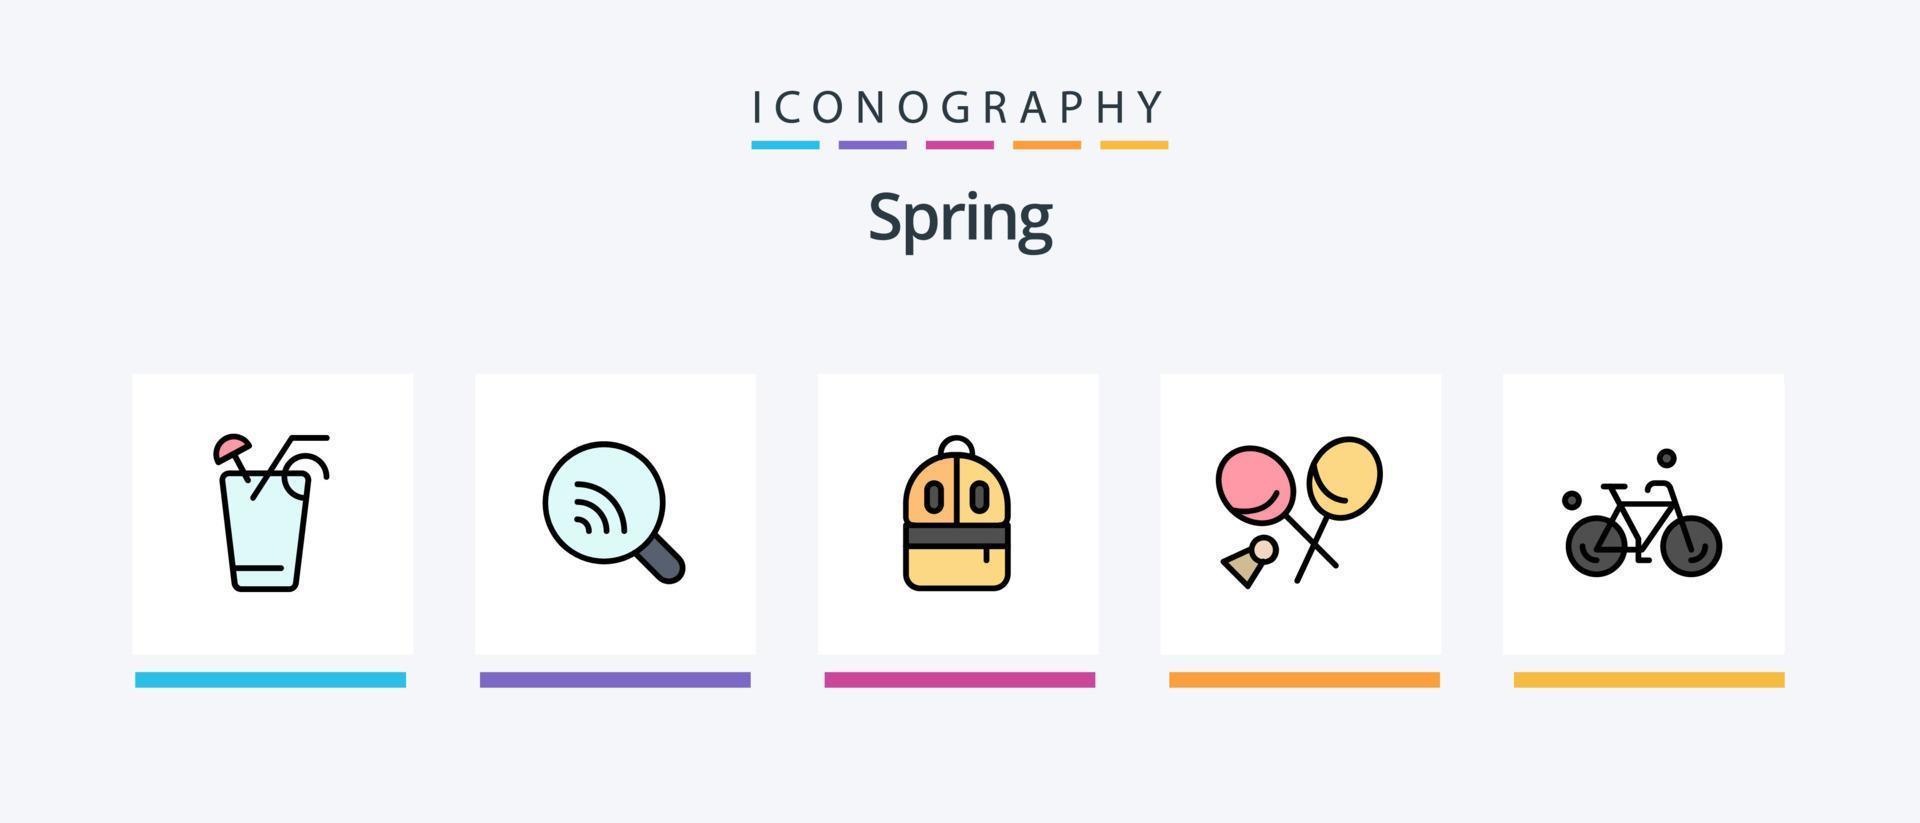 ligne de printemps remplie de 5 packs d'icônes, y compris le chat. lire. œuf. étude. sac. conception d'icônes créatives vecteur